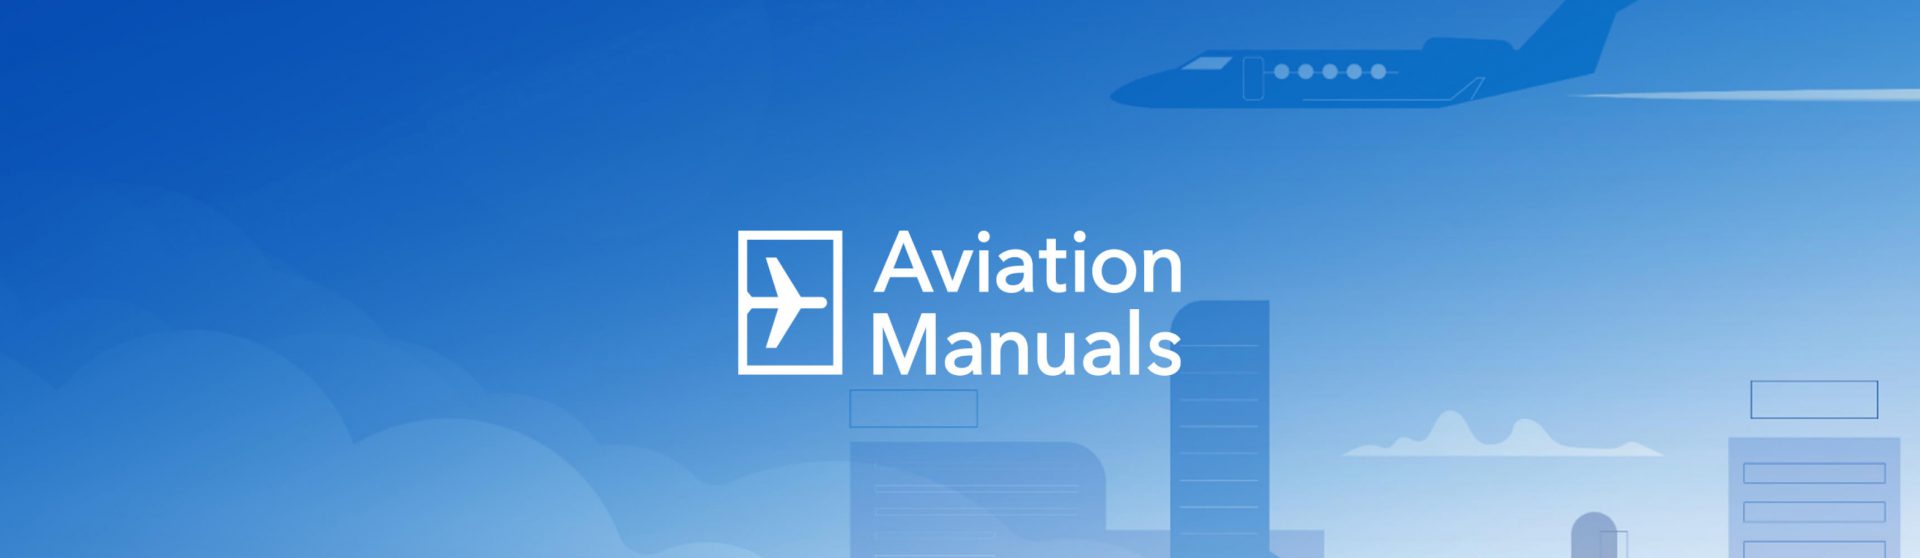 AviationManuals